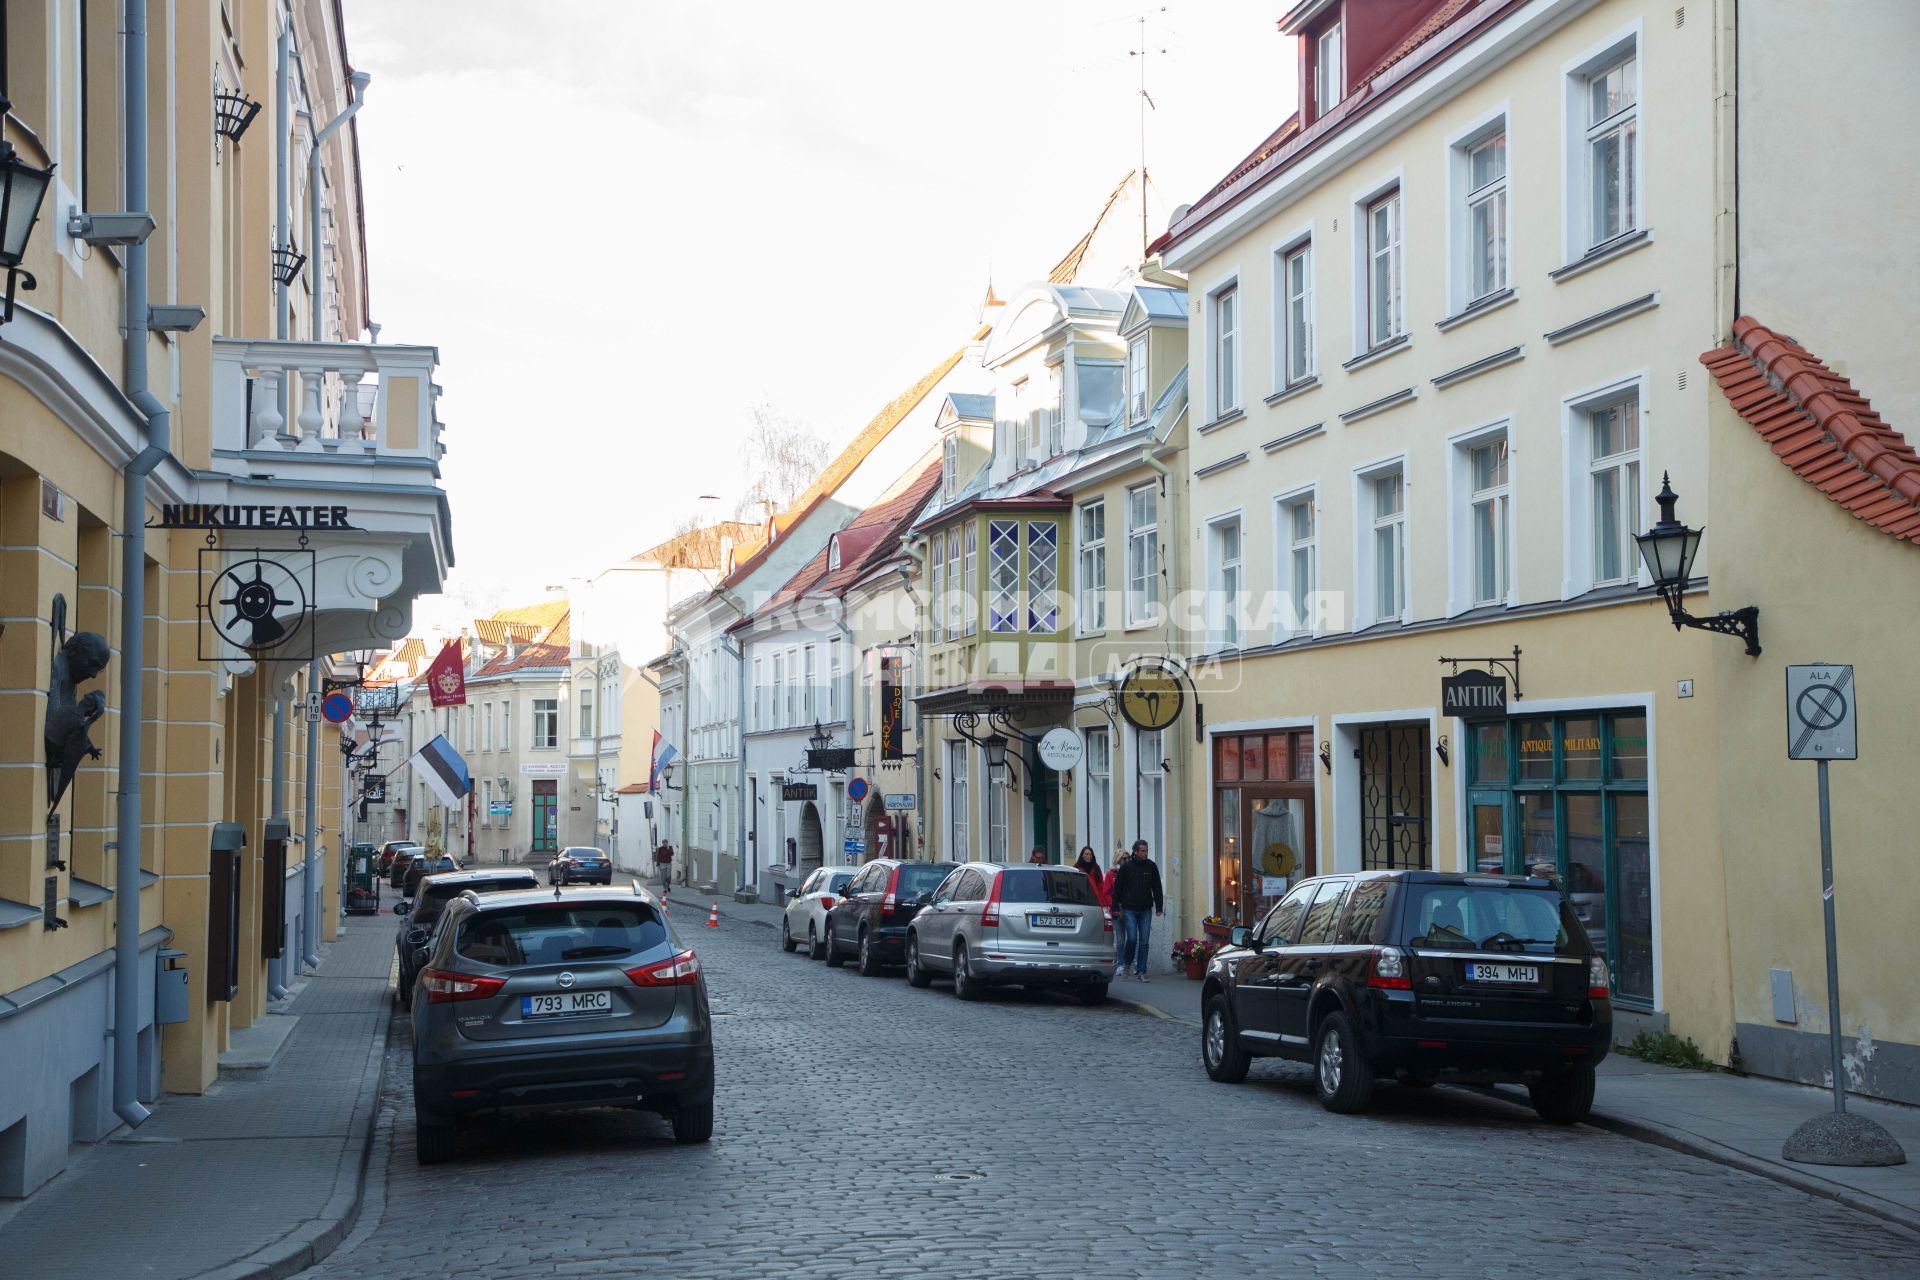 Таллин.  Улица в Старом городе.